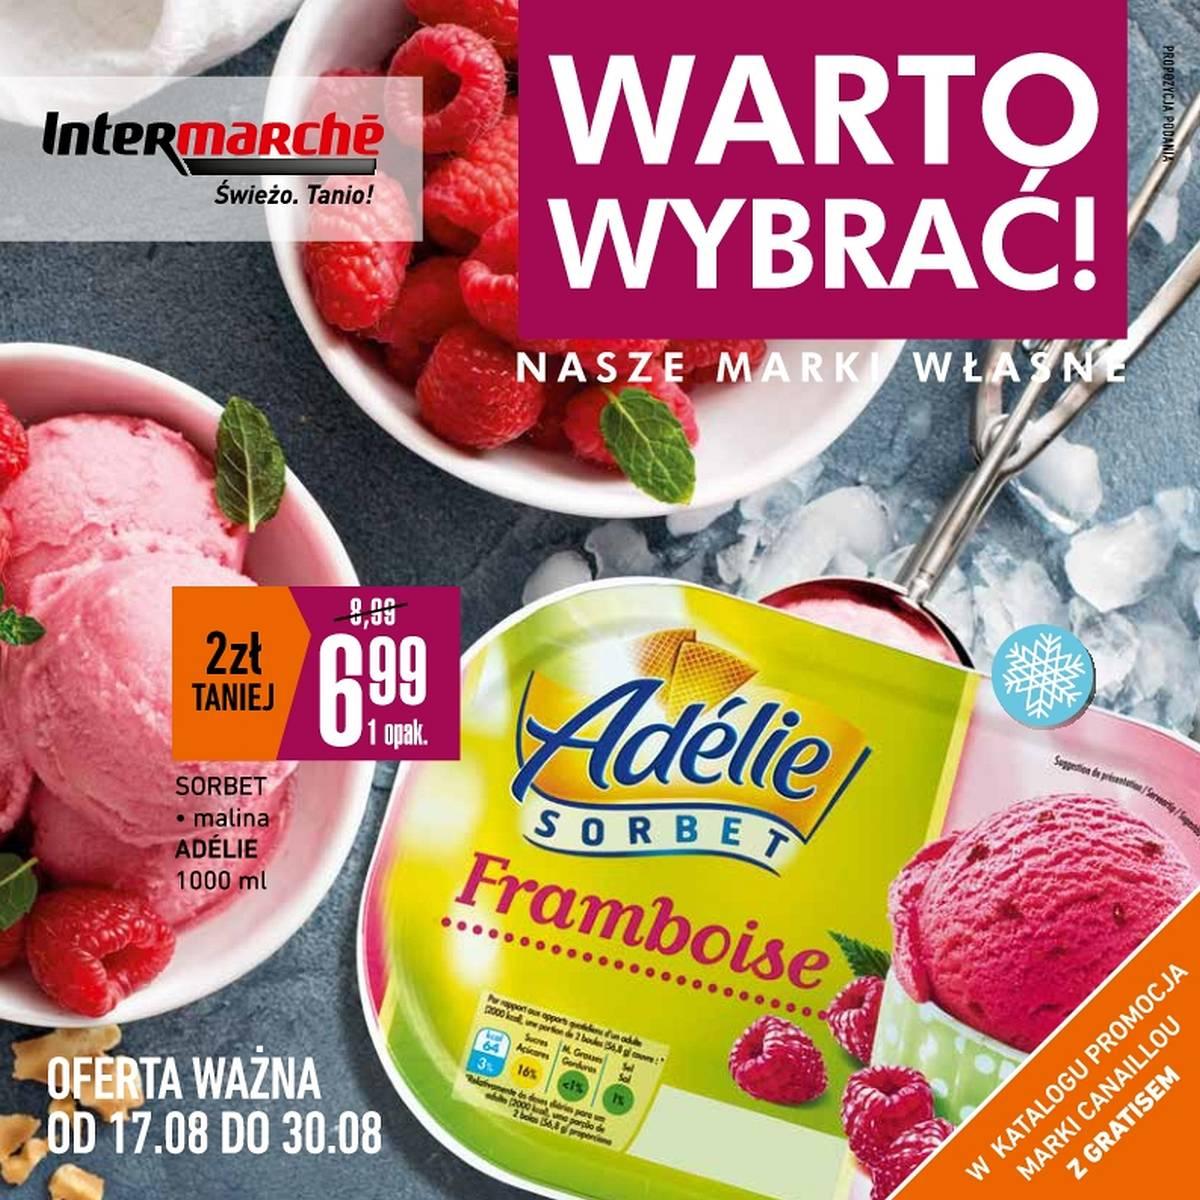 Gazetka promocyjna Intermarche do 30/08/2017 str.0